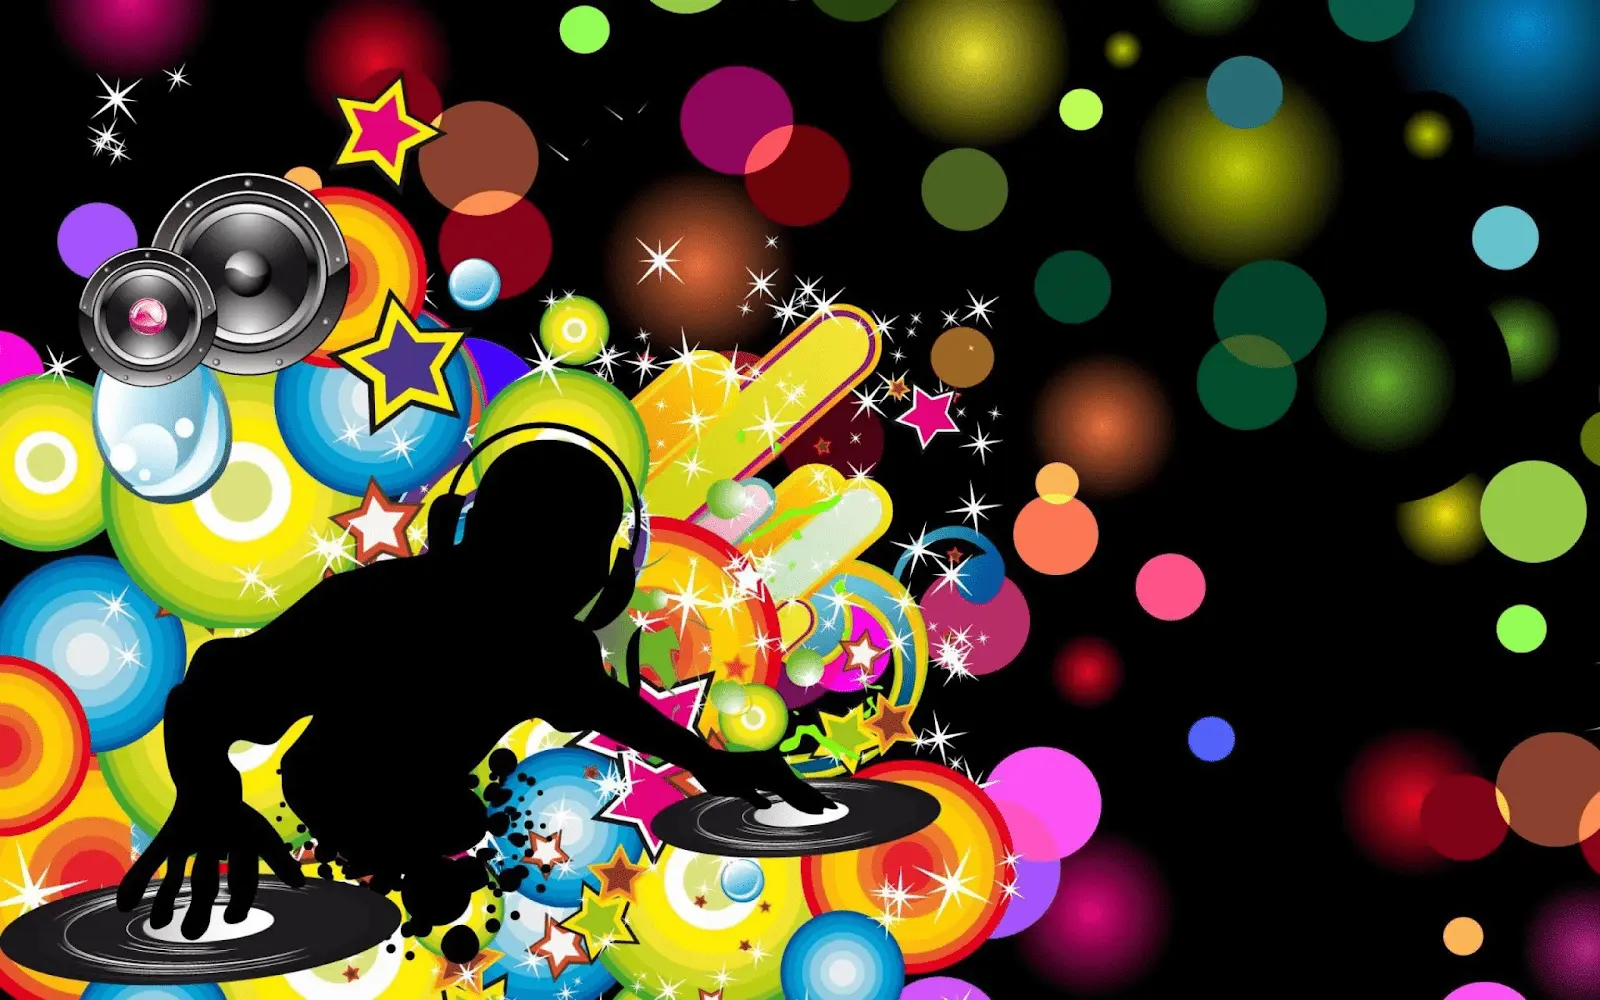 Ejemplo de diseño Funky Metro con elementos relacionados con la música y colores vibrantes